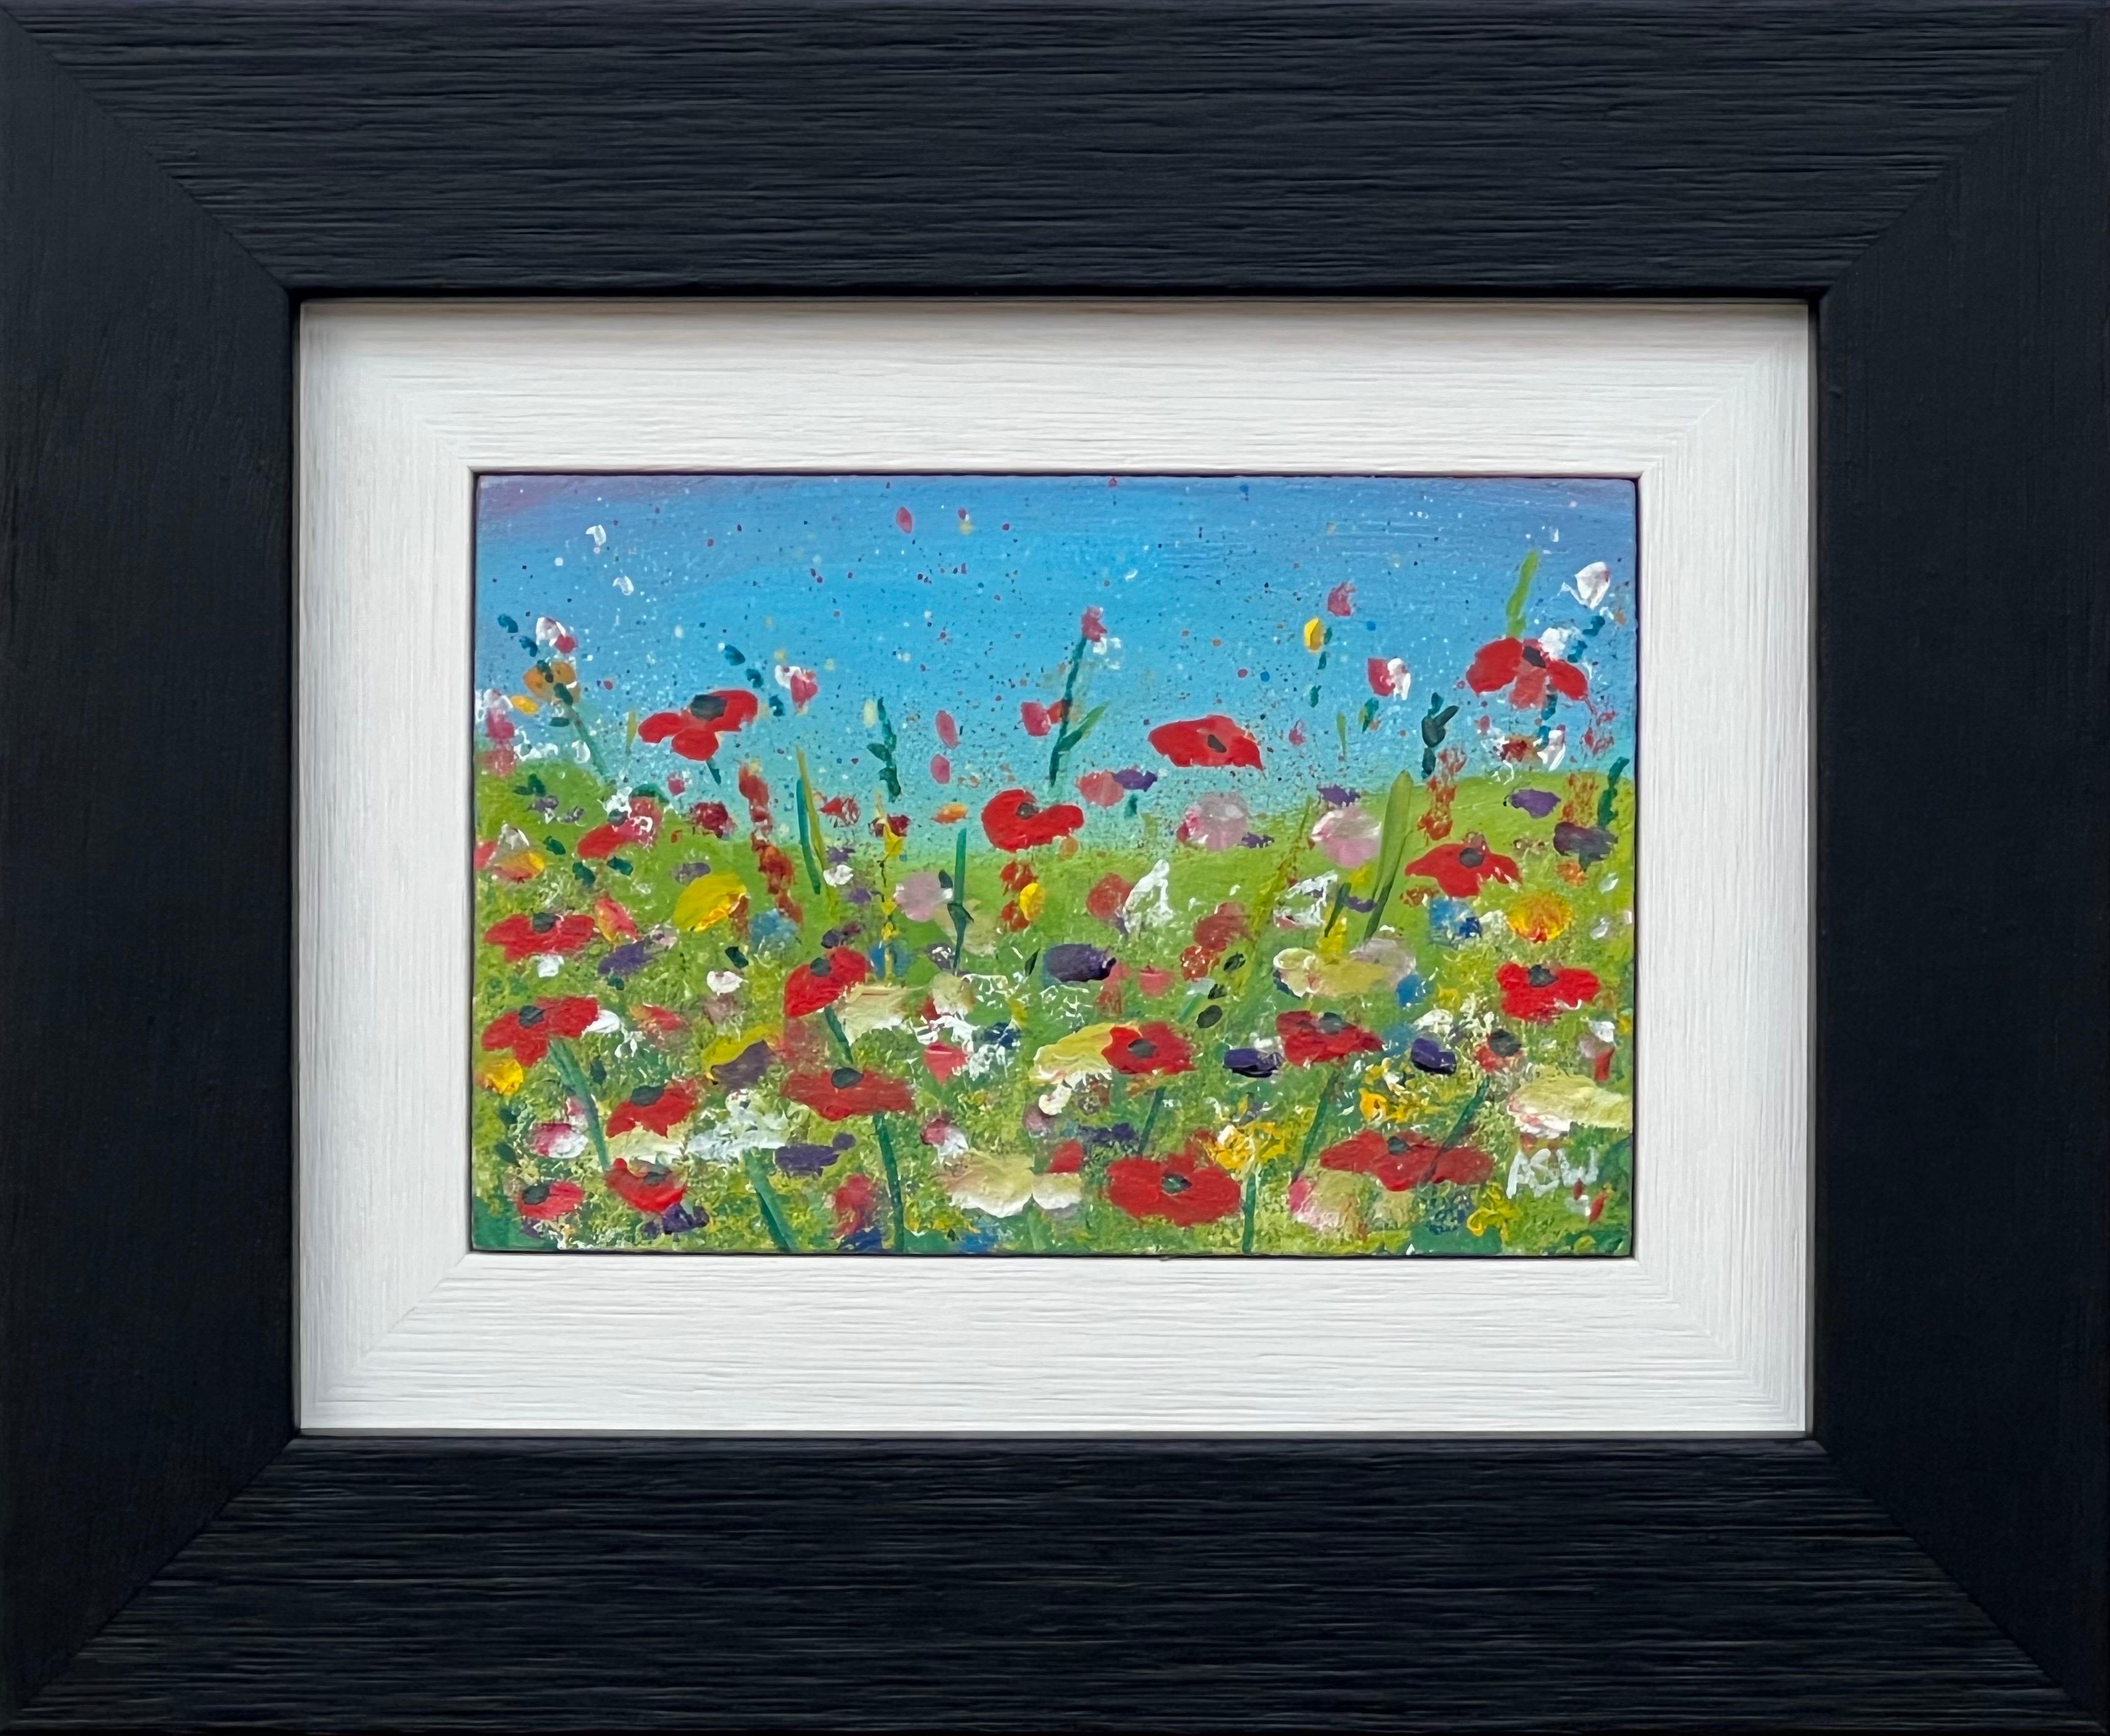 Abstract Painting Angela Wakefield - Fleurs de coquelicots rouges miniatures dans une prairie verte sauvage avec un ciel bleu en Angleterre 